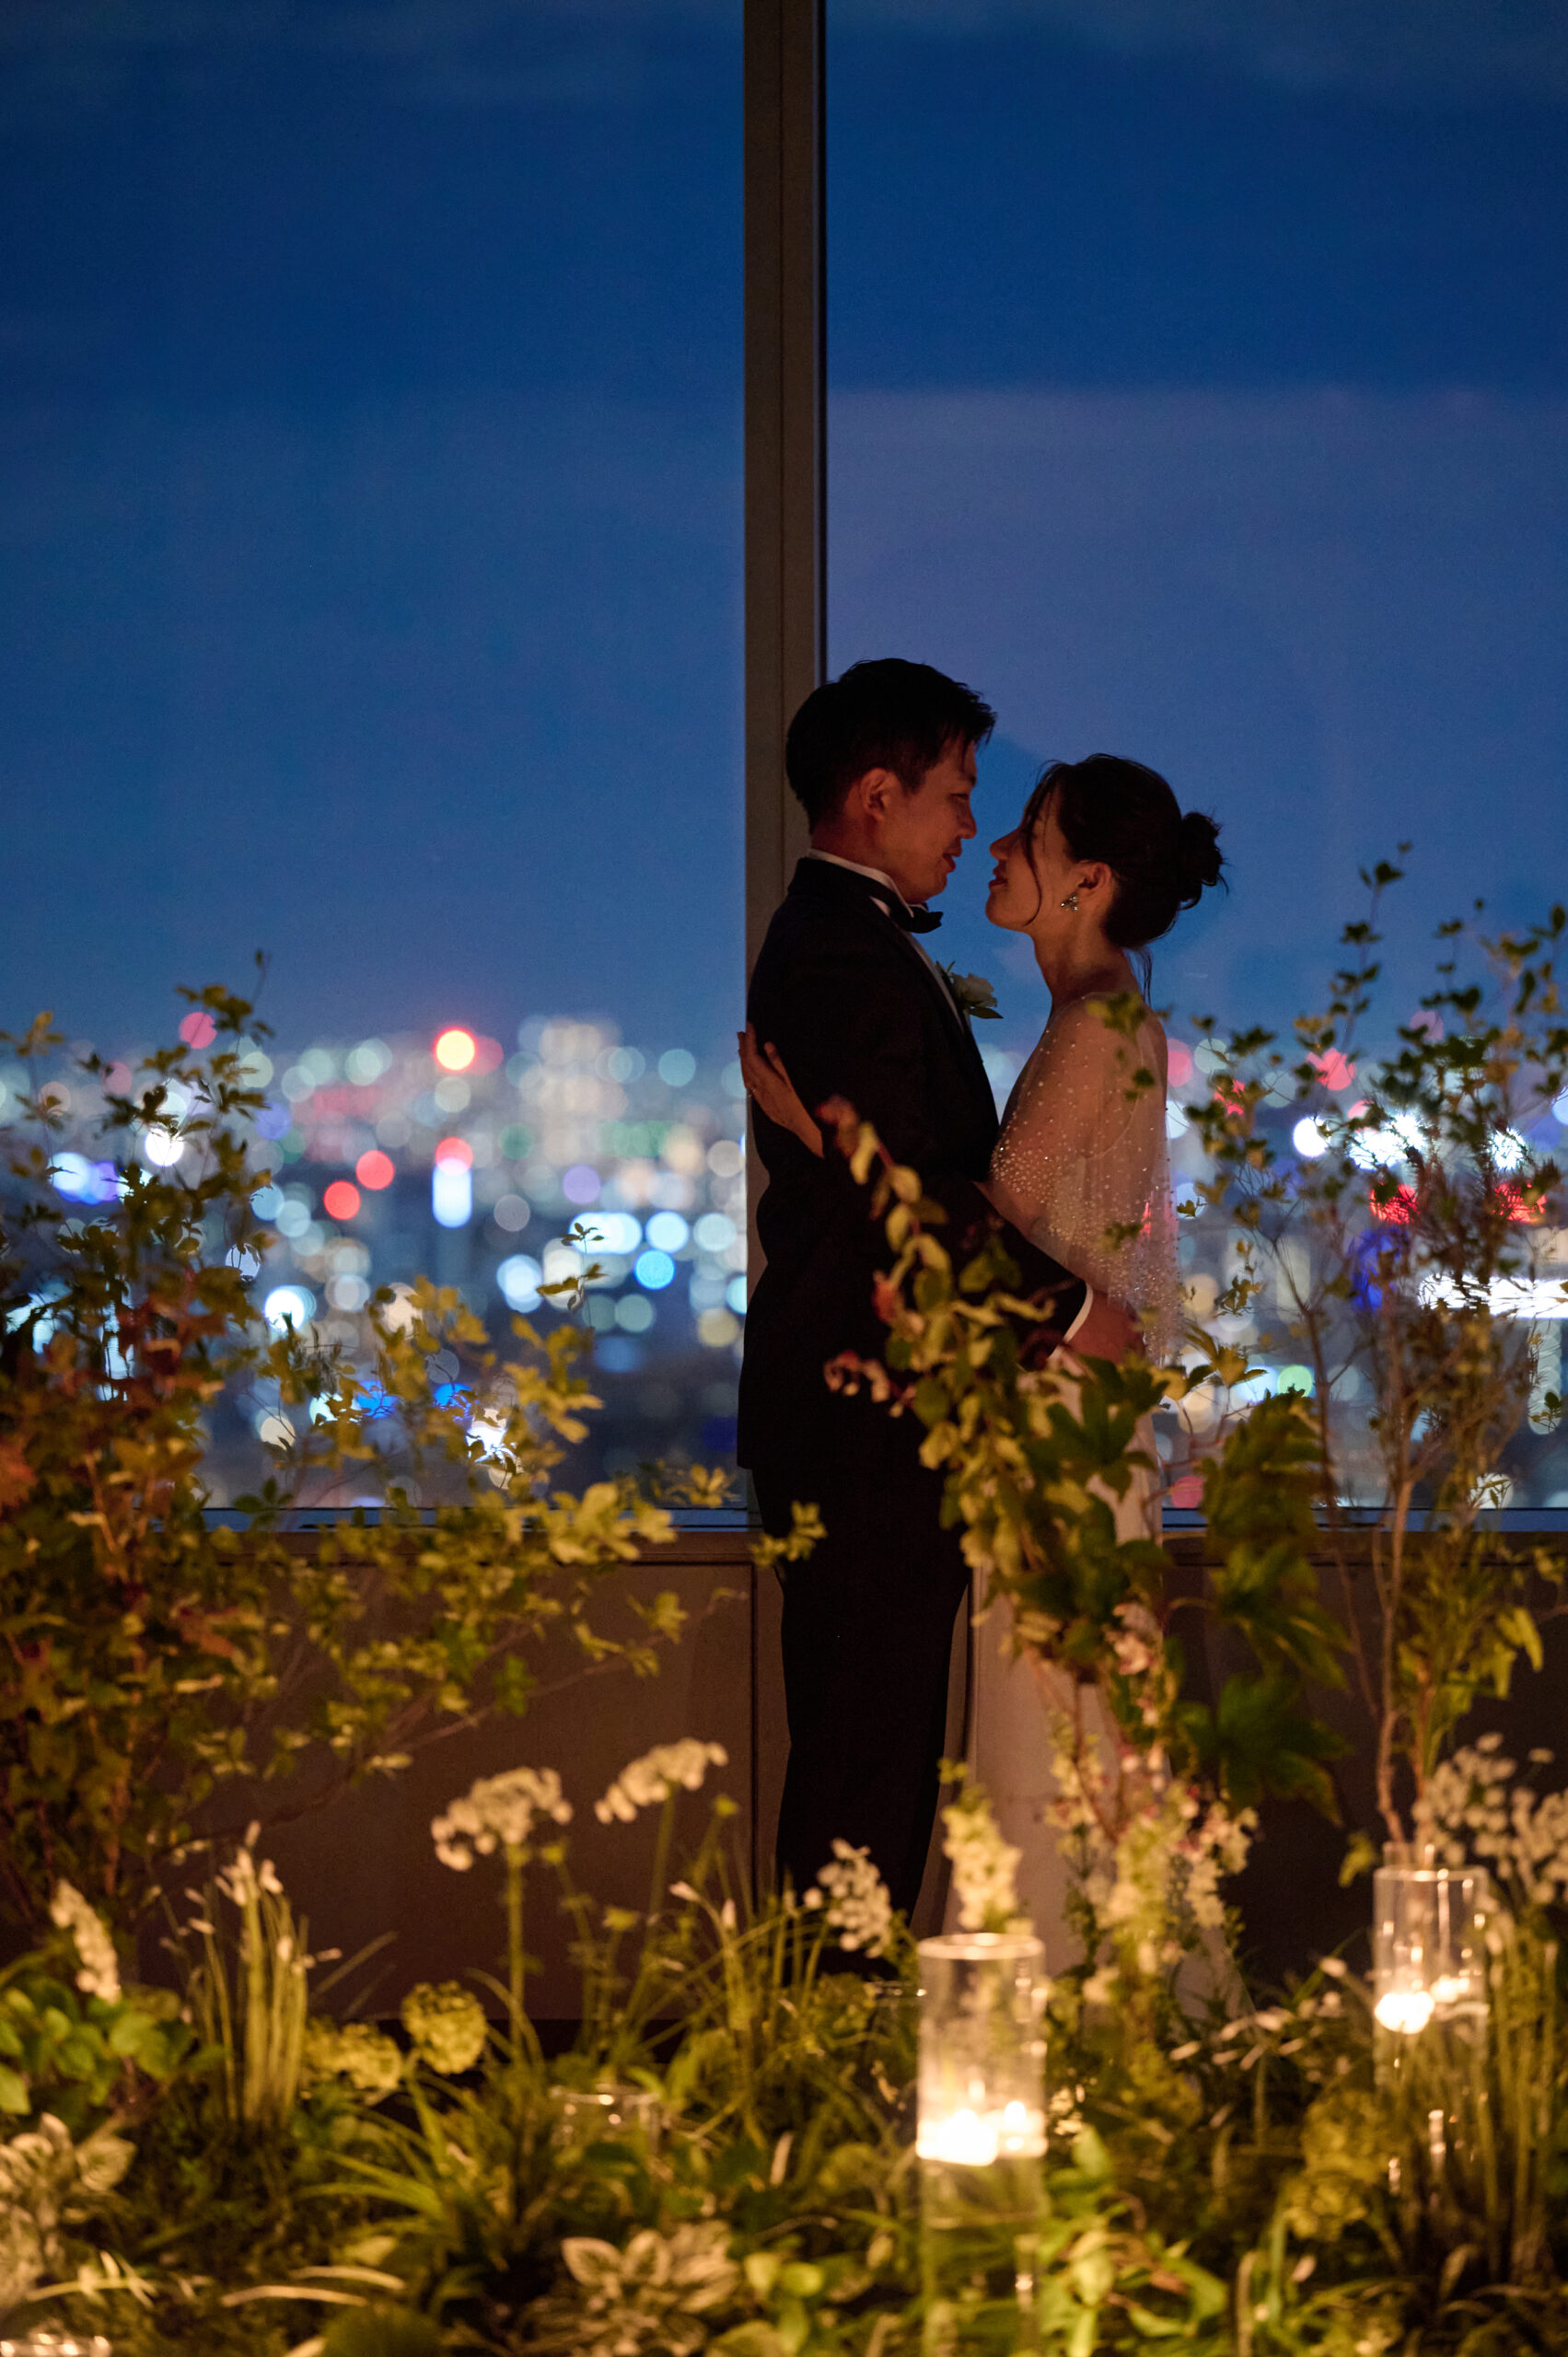 パレスホテル東京の運営する霞山会館は一日貸し切りでお二人らしいウェディングを実現できる会場だからこそ、柔らかな光にに包まれる東京や、煌びやかな東京の夜景など様々な東京の街並みを眺めることができます